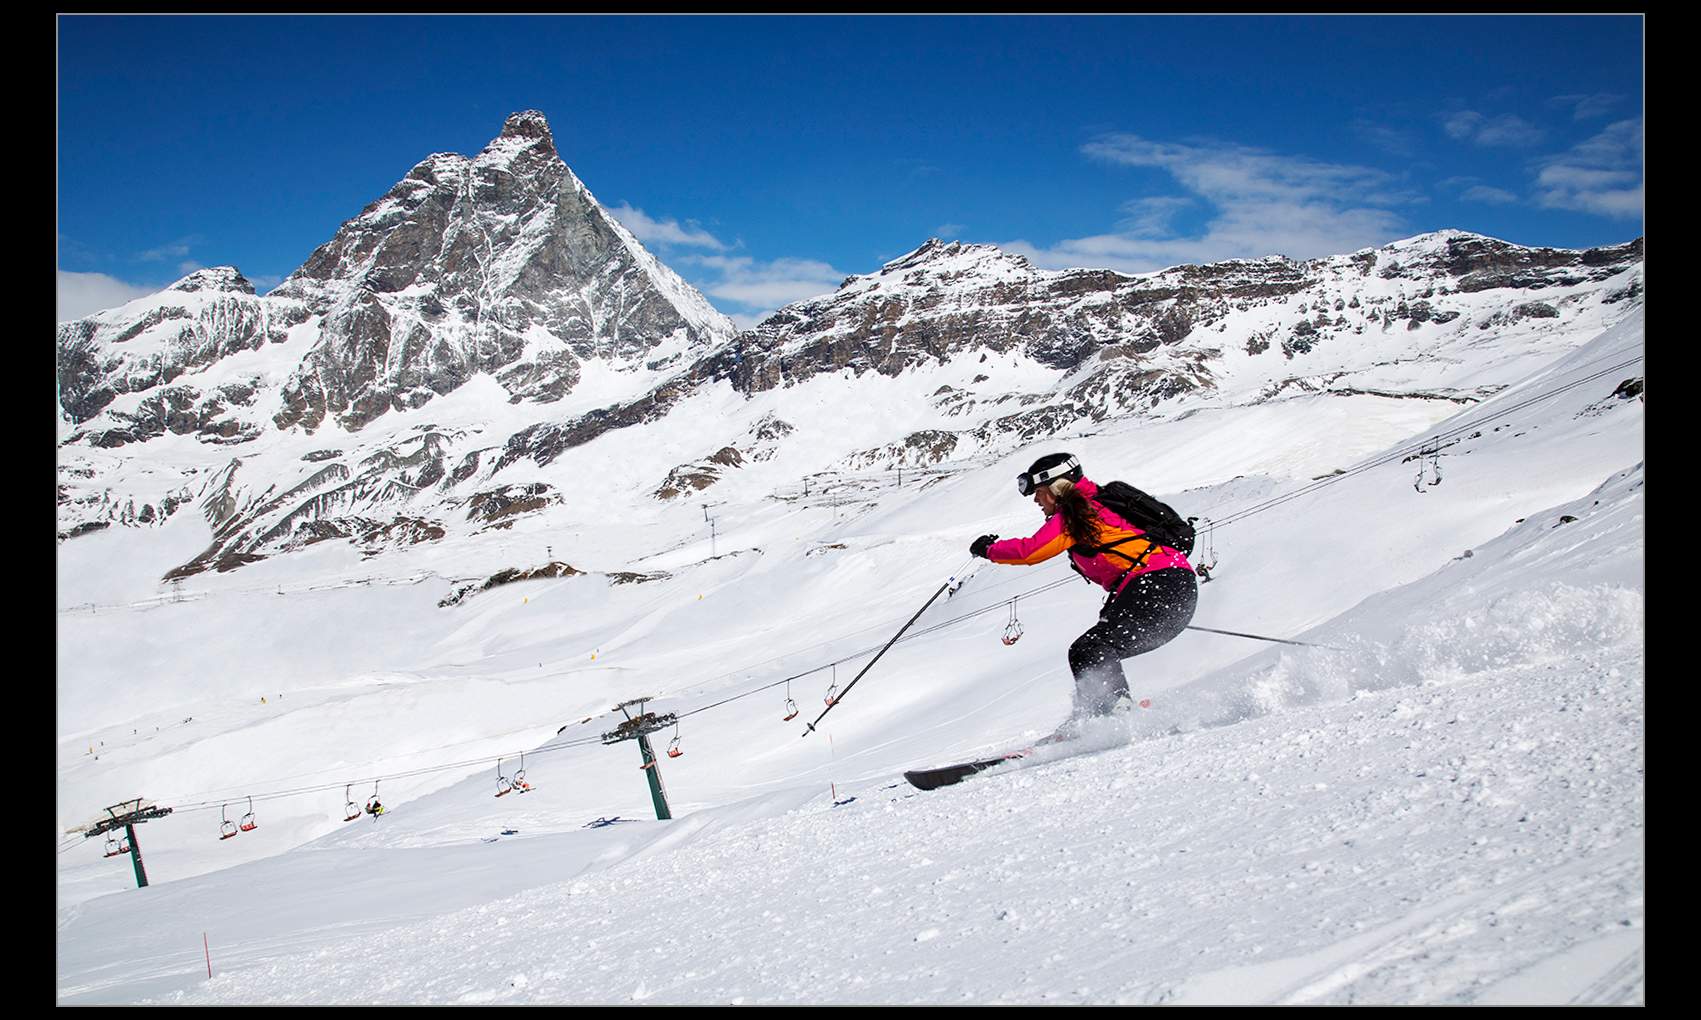 Photo by Fredrik Rege © Ski Photography, Matterhorn